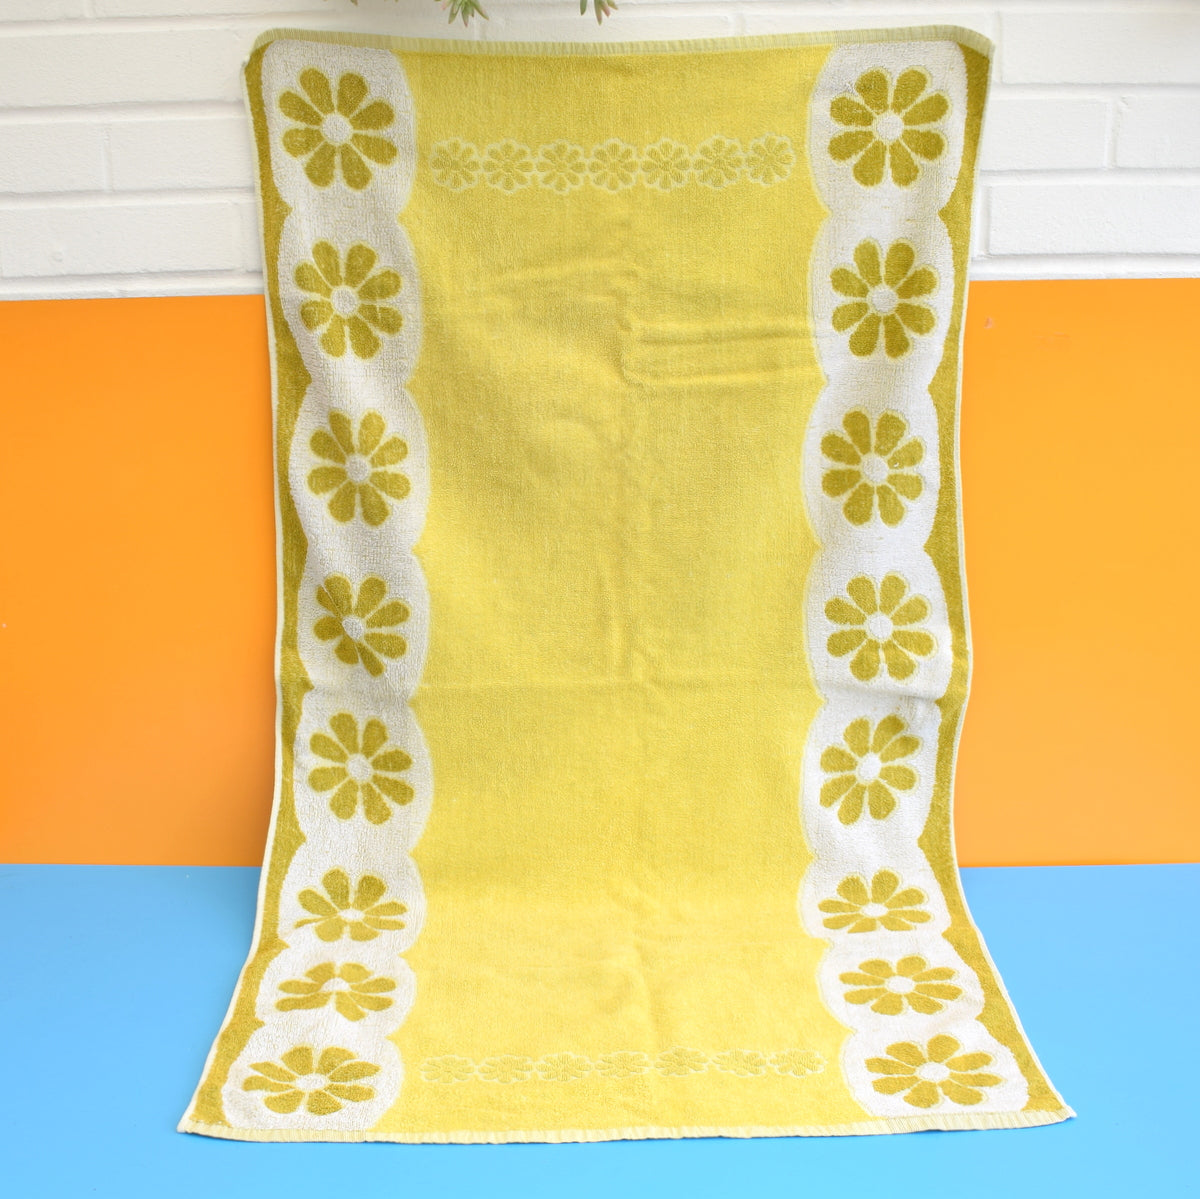 Vintage 1960s Cotton Bath Towel - Flower Power - Lime